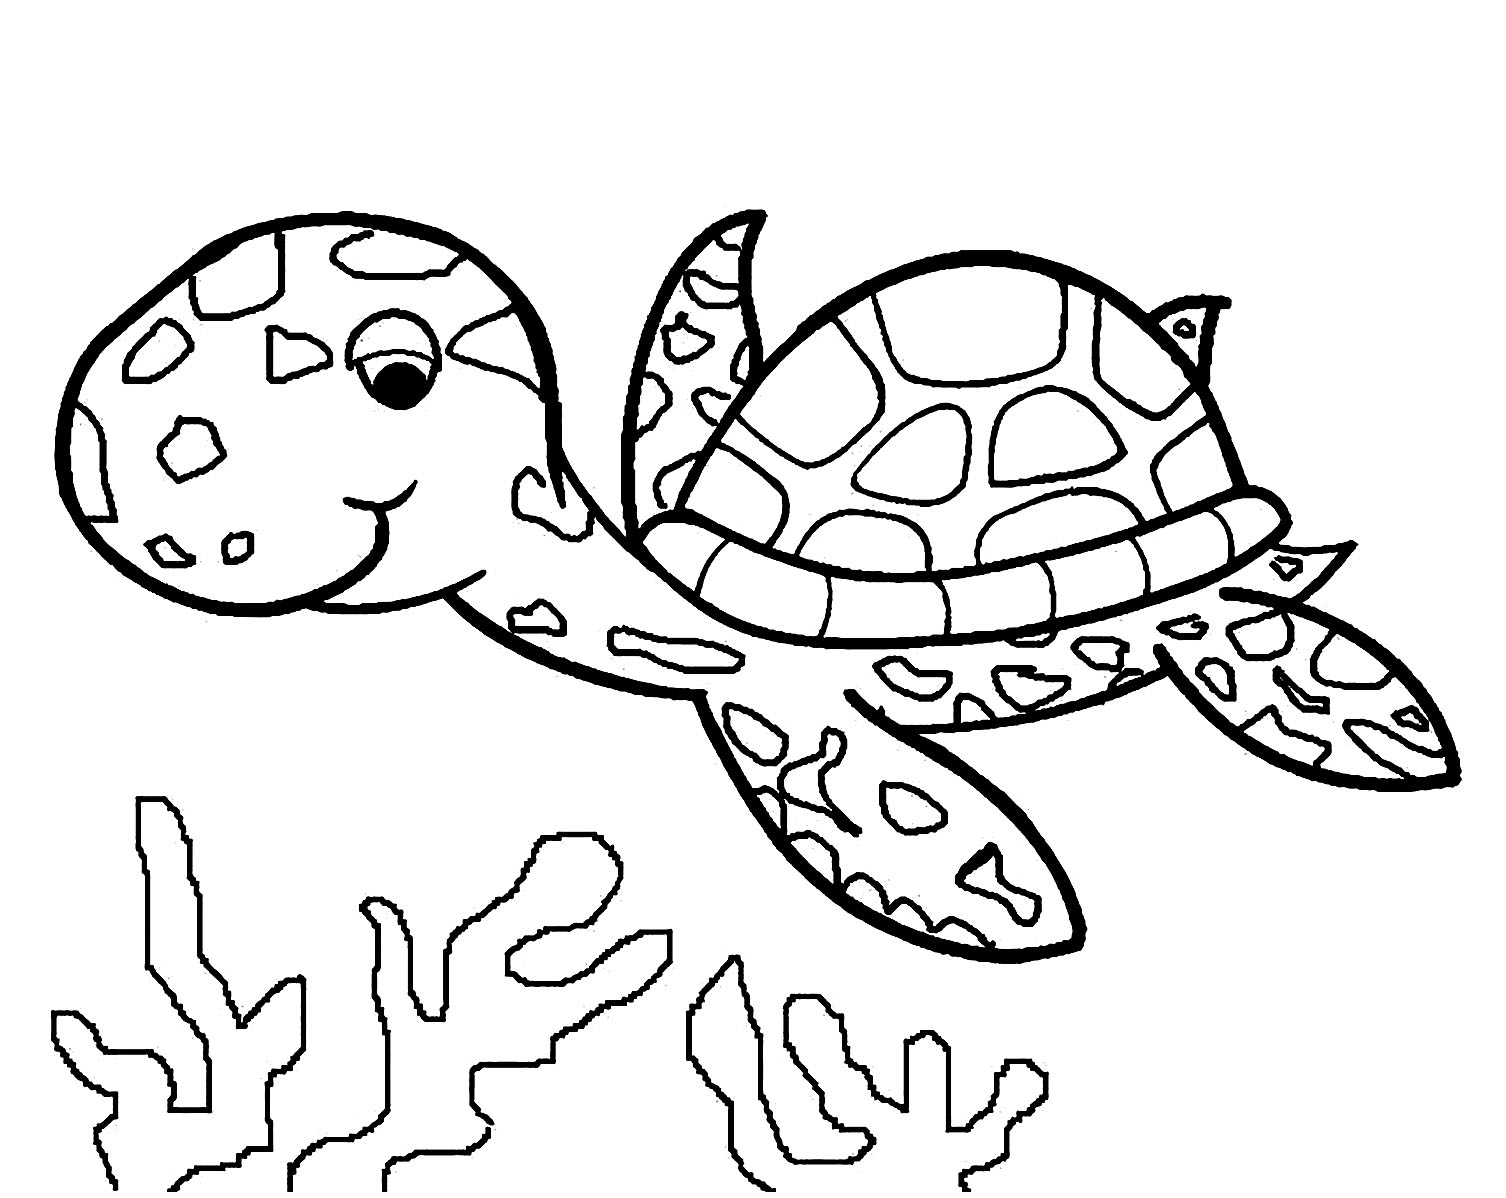 Descarregar e imprimir imagem de tartaruga para crianças